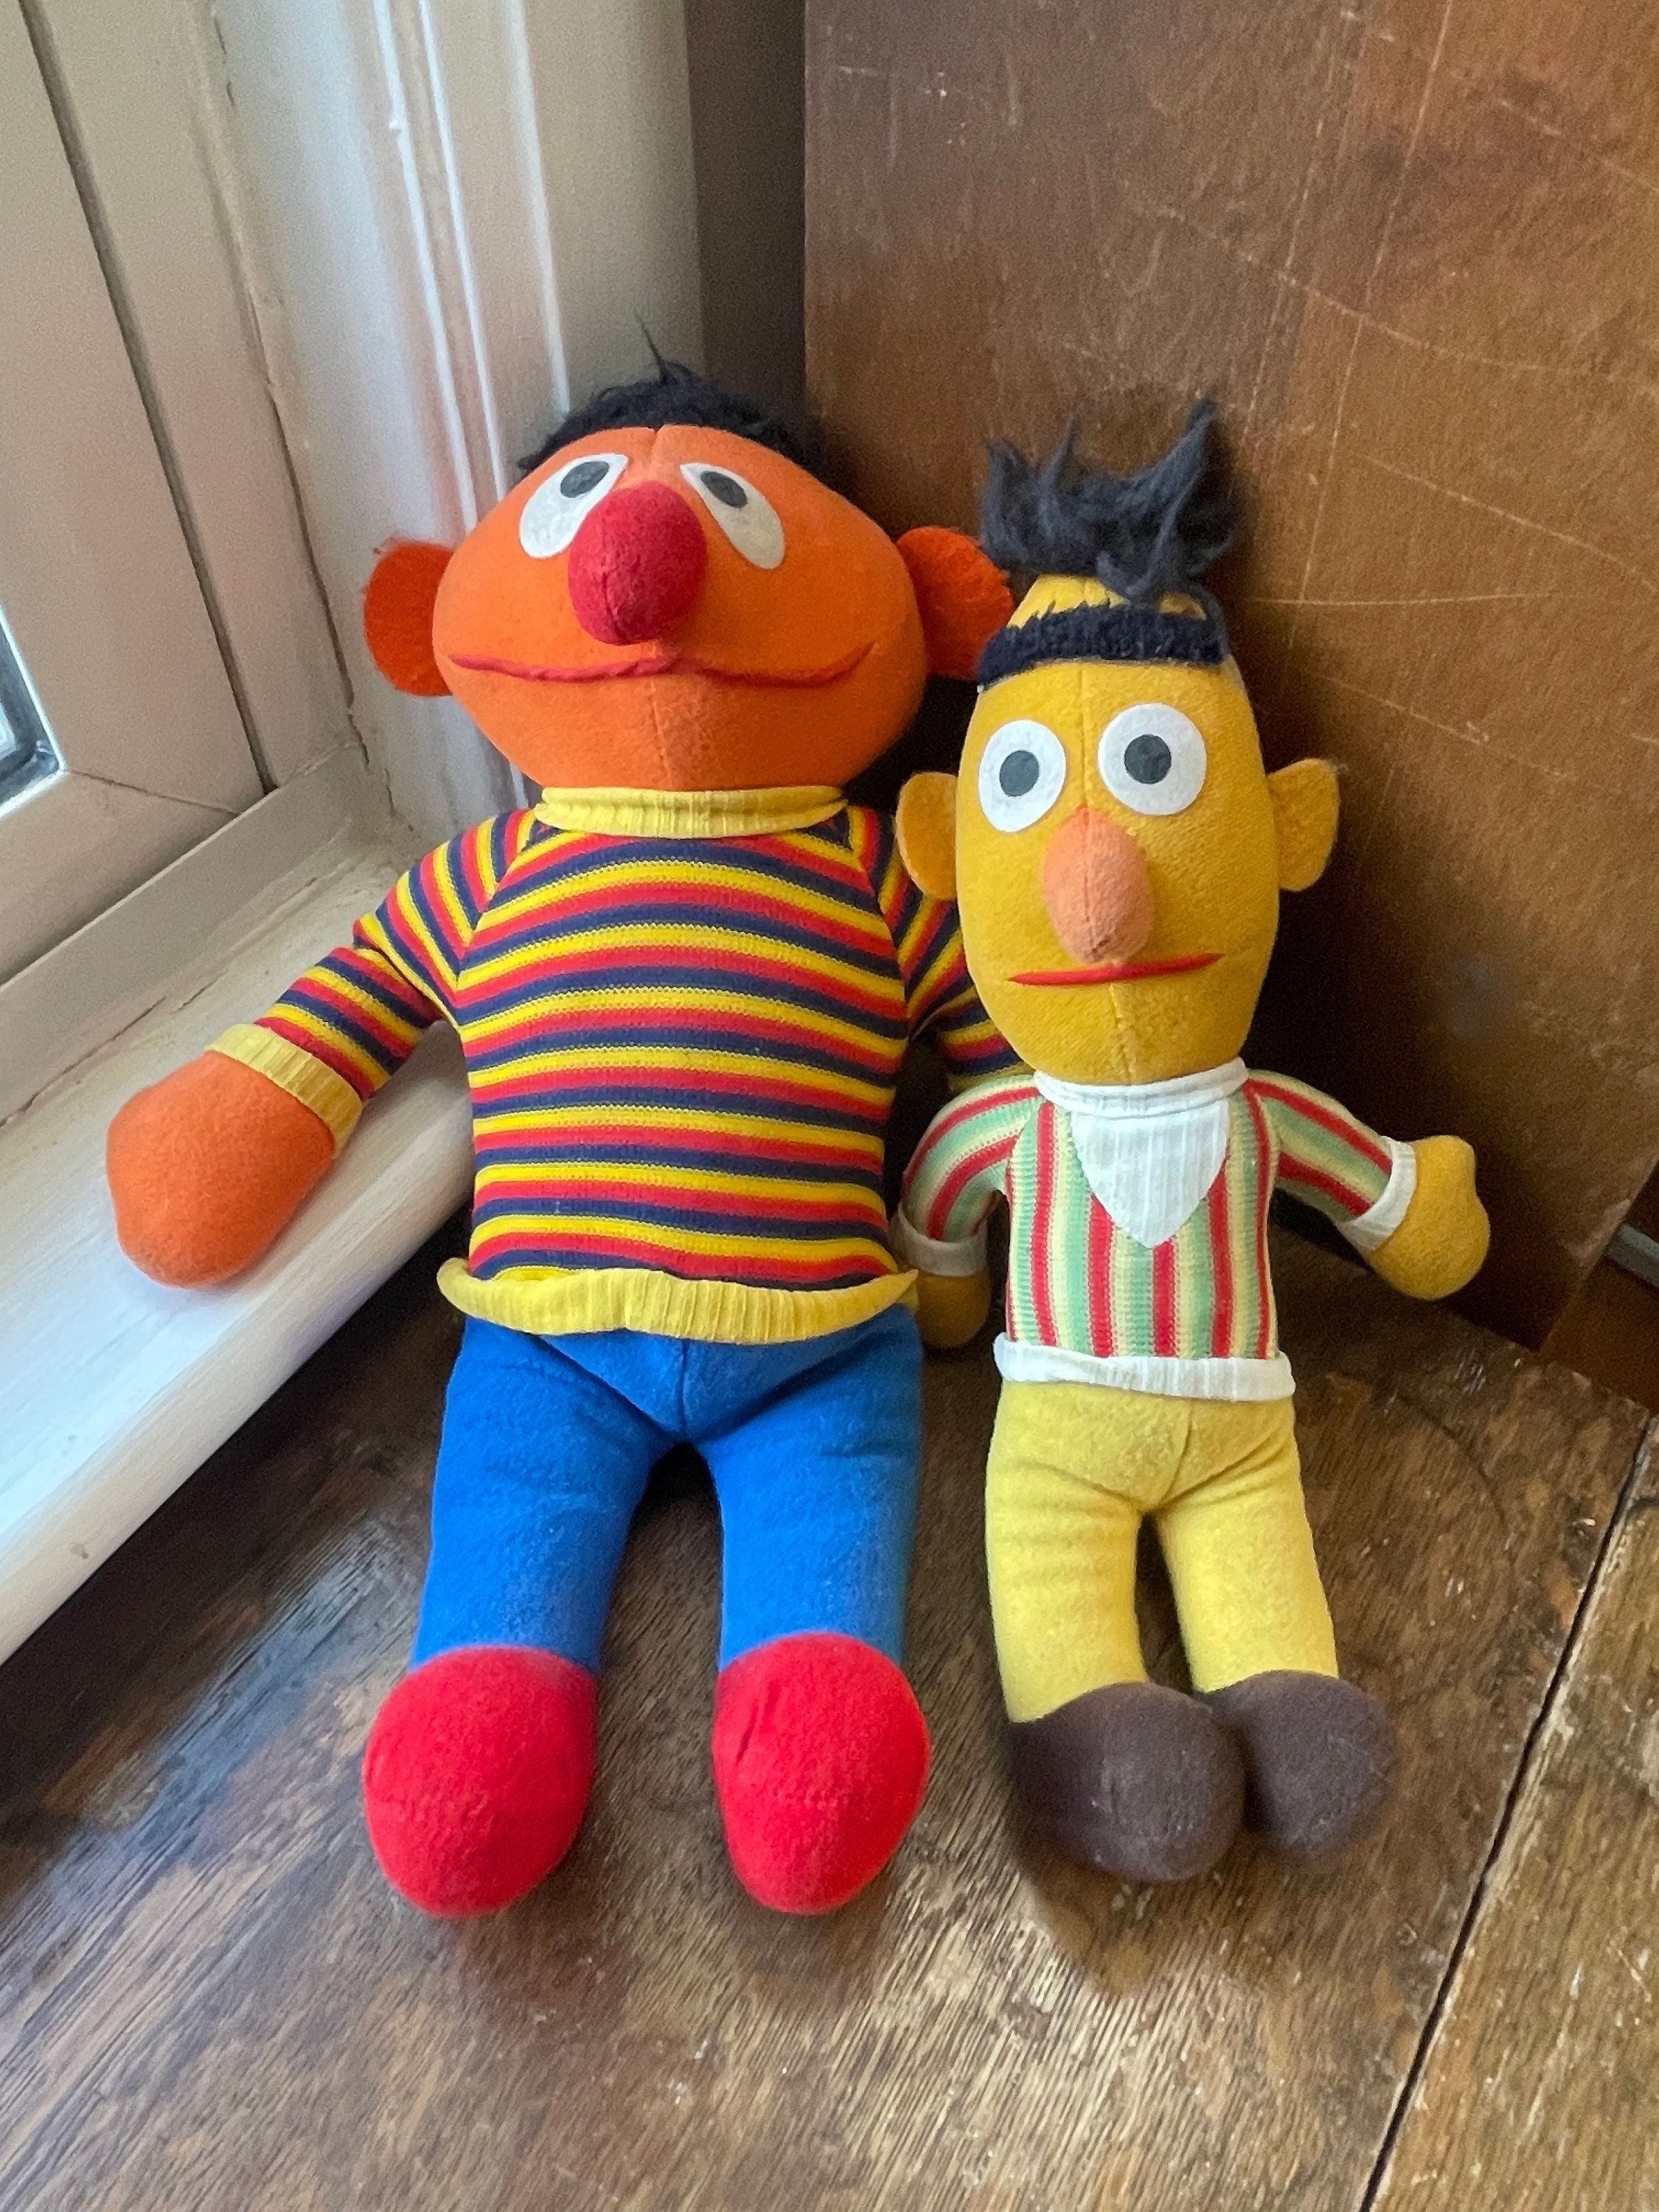 Bert Ernie Burt Peluche Sesame Street Muppets sac de haricots